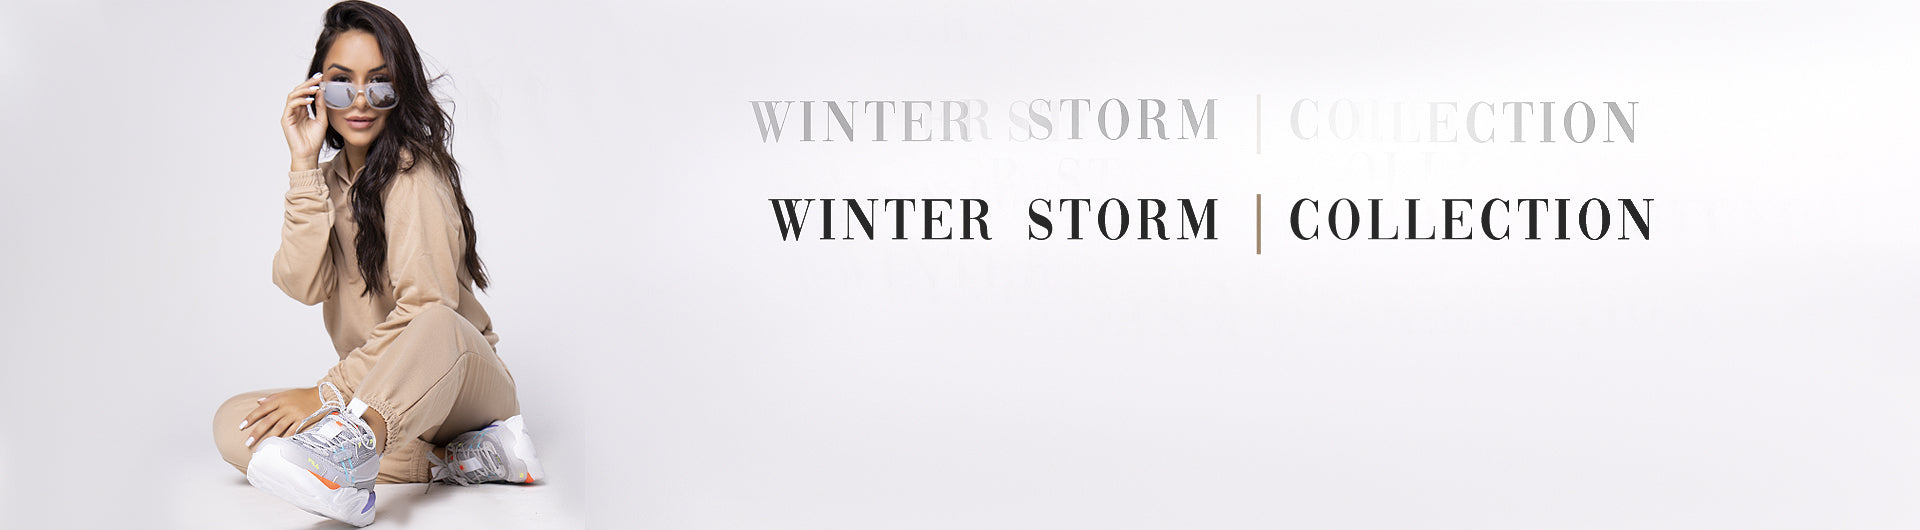 Banner da modelo com um conjunto de moletom, apresentando a coleção Winter Stom | Bravaa Store.